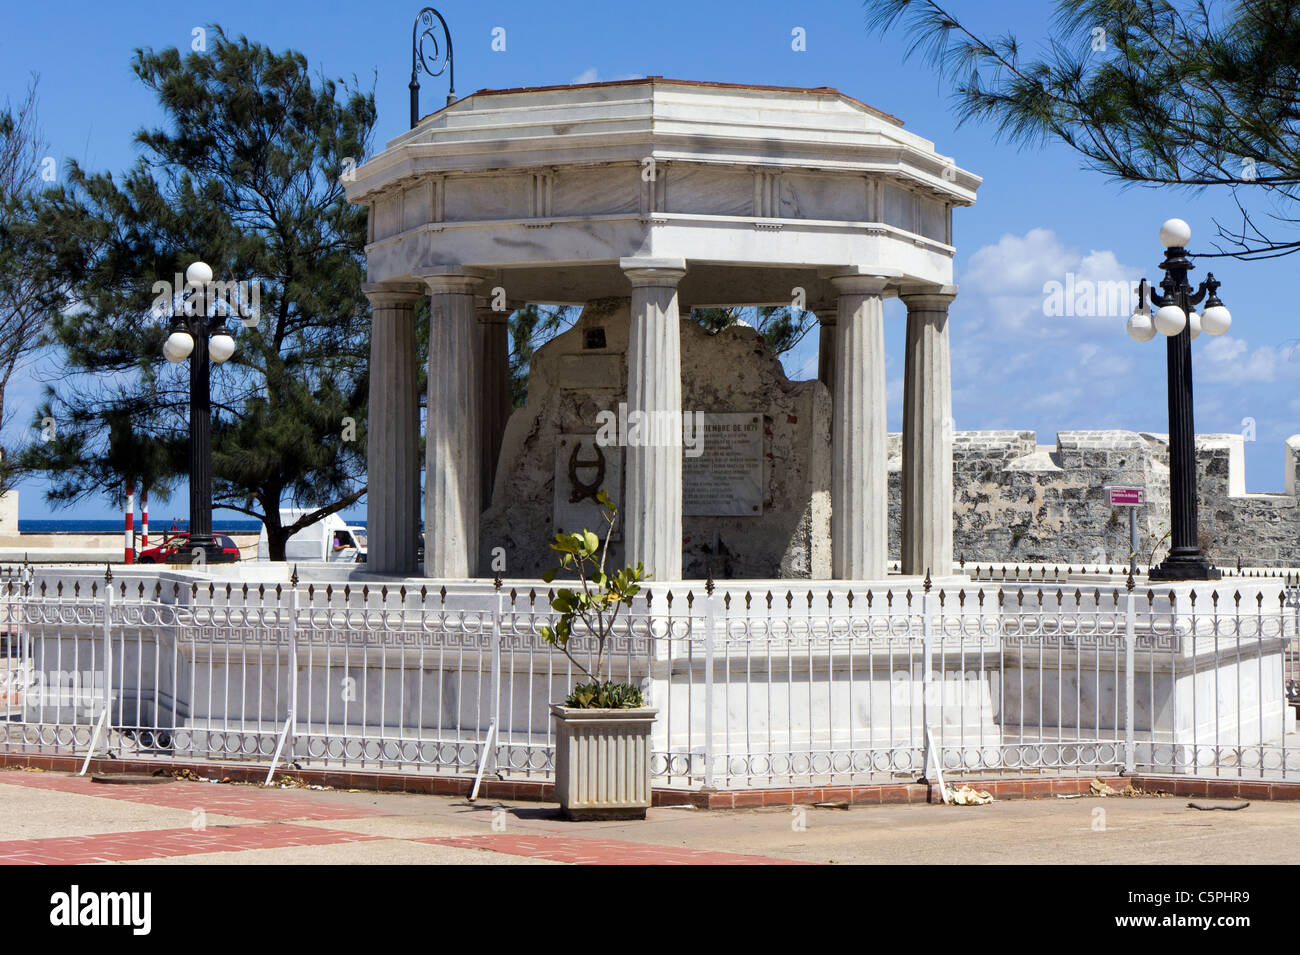 Denkmal für acht kubanischen Medizinstudenten im Jahre 1871 von spanischen Kolonialtruppen von José Vilalta Saavedra ausgeführt. Havanna, Kuba Stockfoto